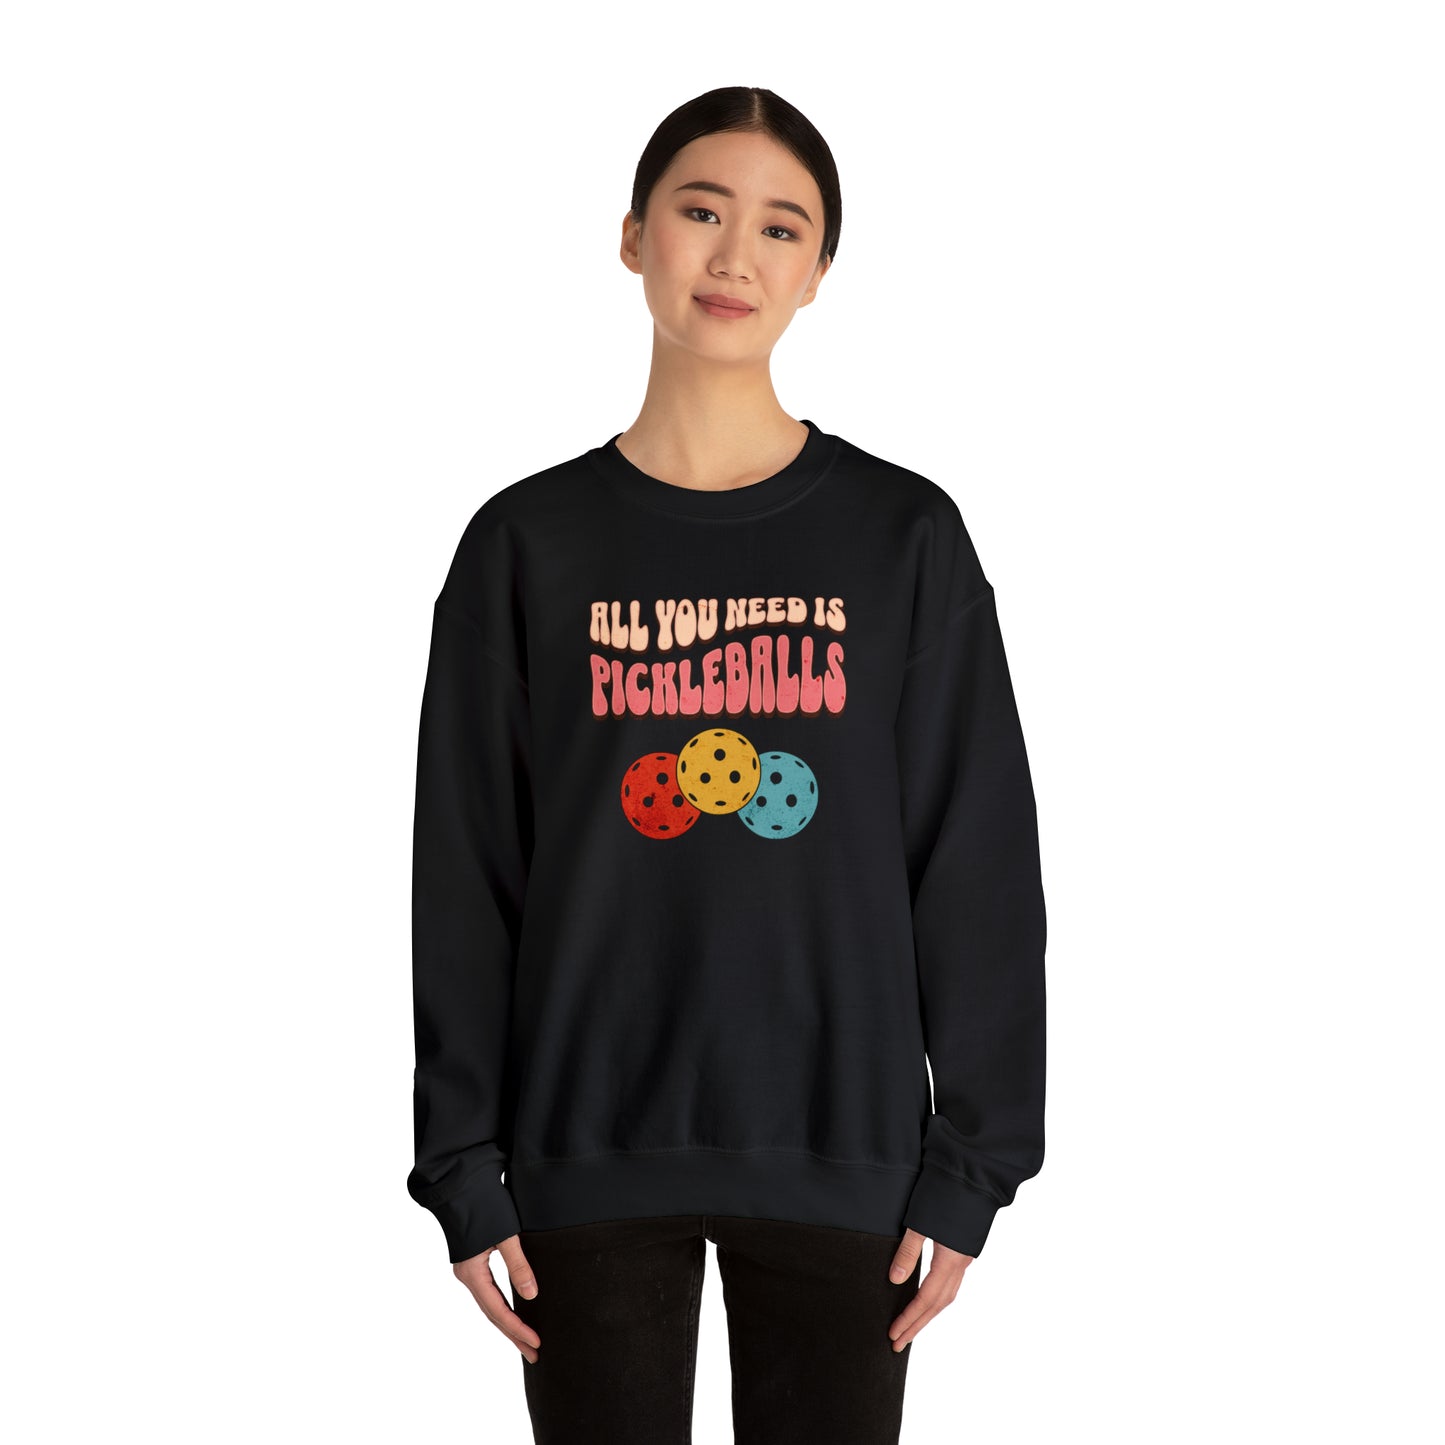 All You Need is Pickleballs Sweatshirt